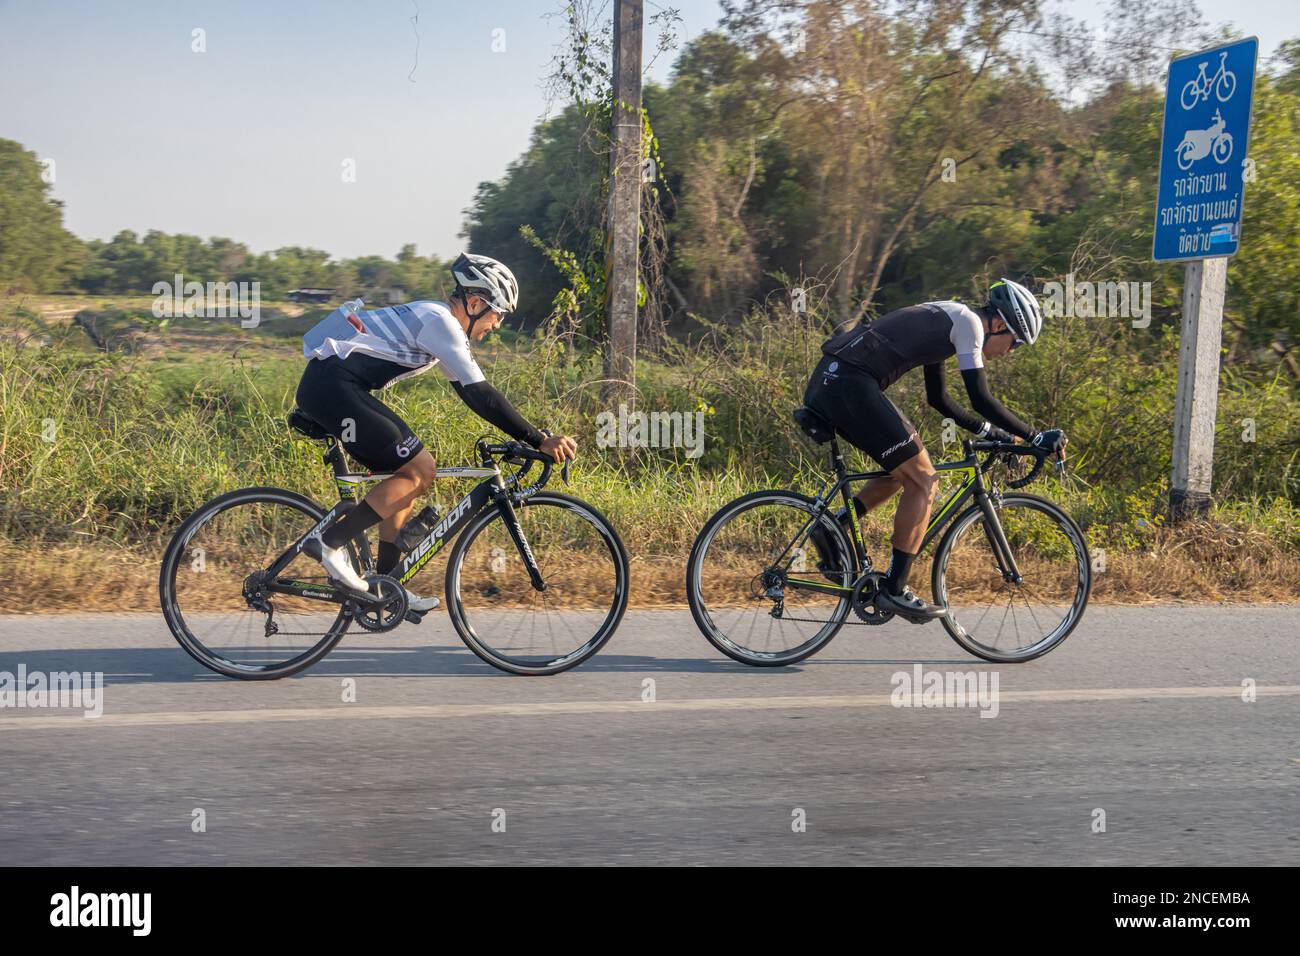 Un paio di ciclisti sta guidando su una strada con una pista ciclabile marcata, Thailandia Foto Stock